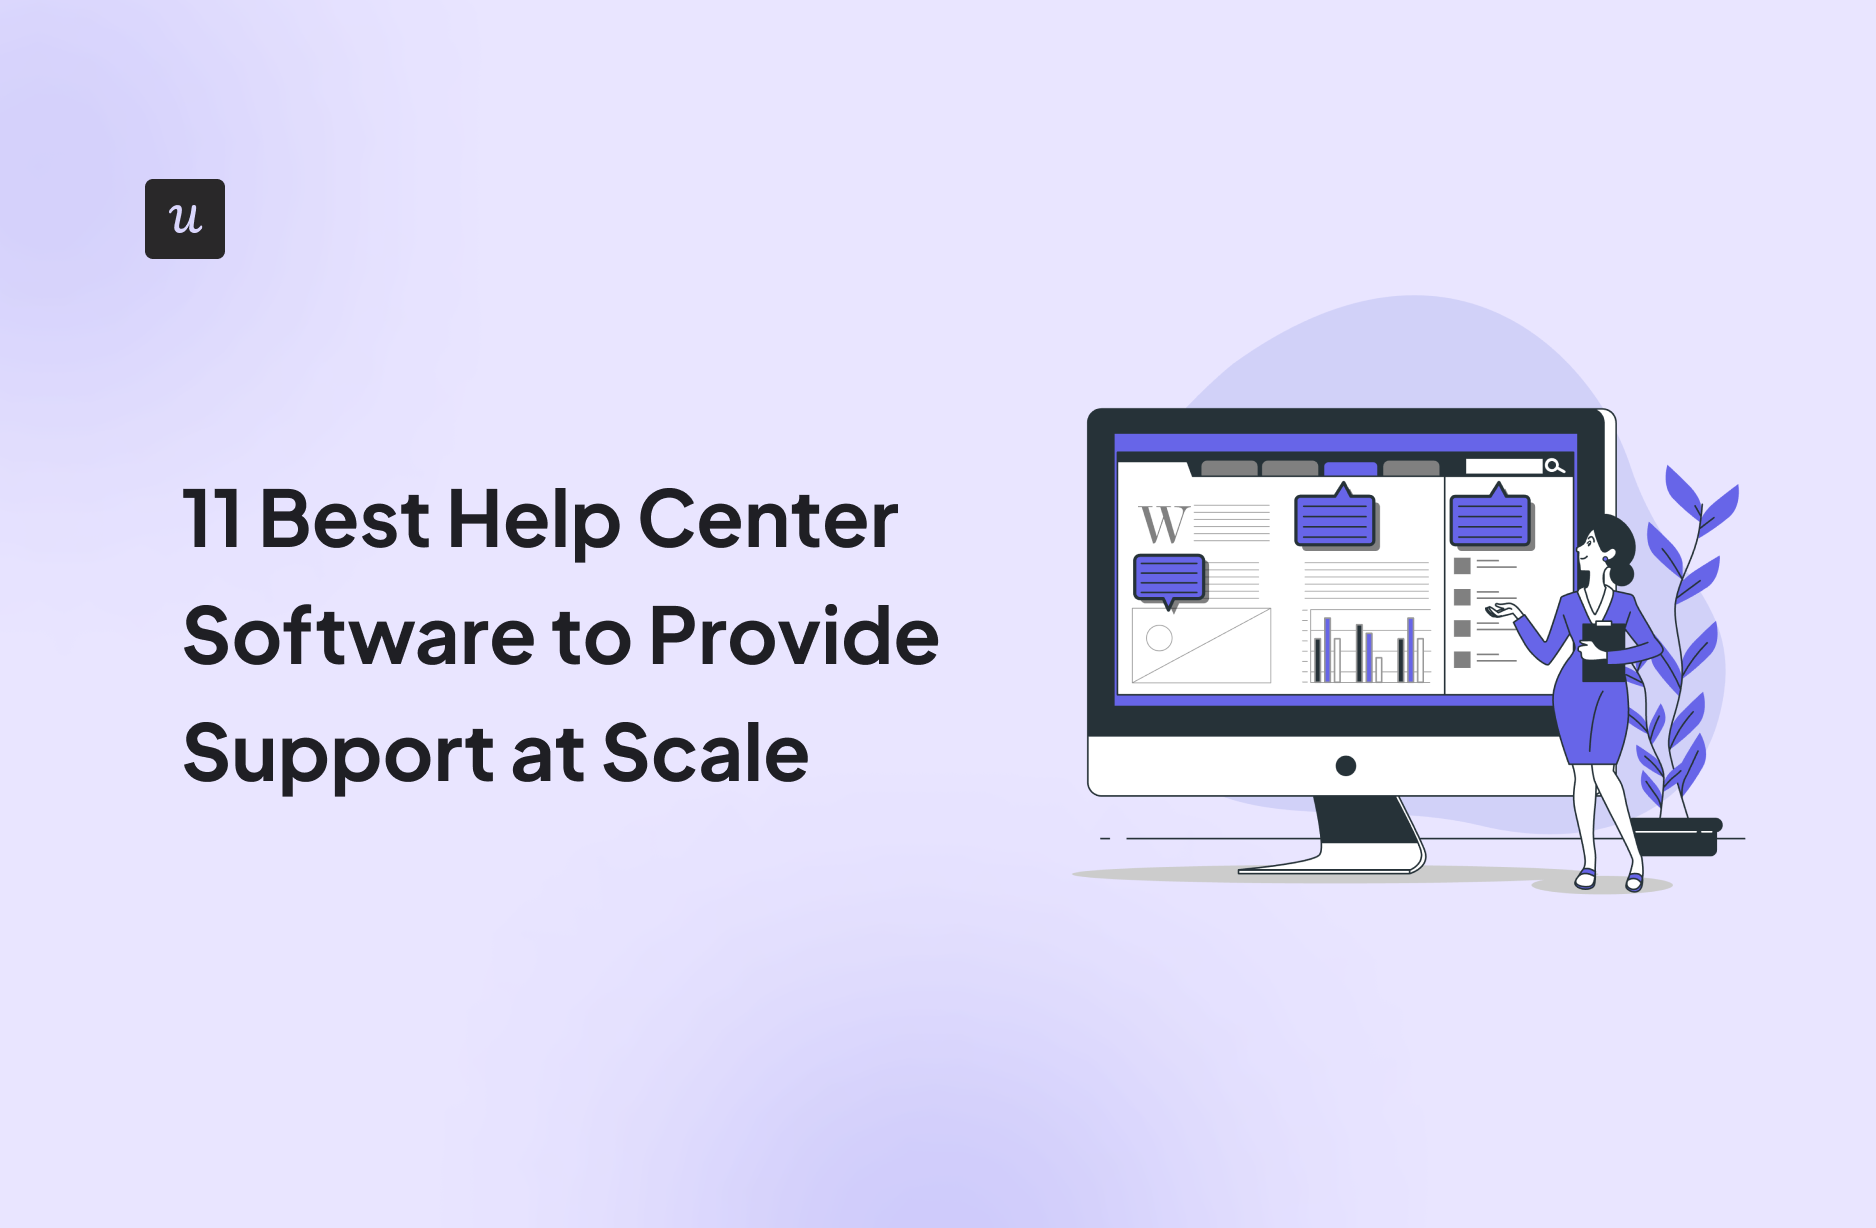 Help Center Software